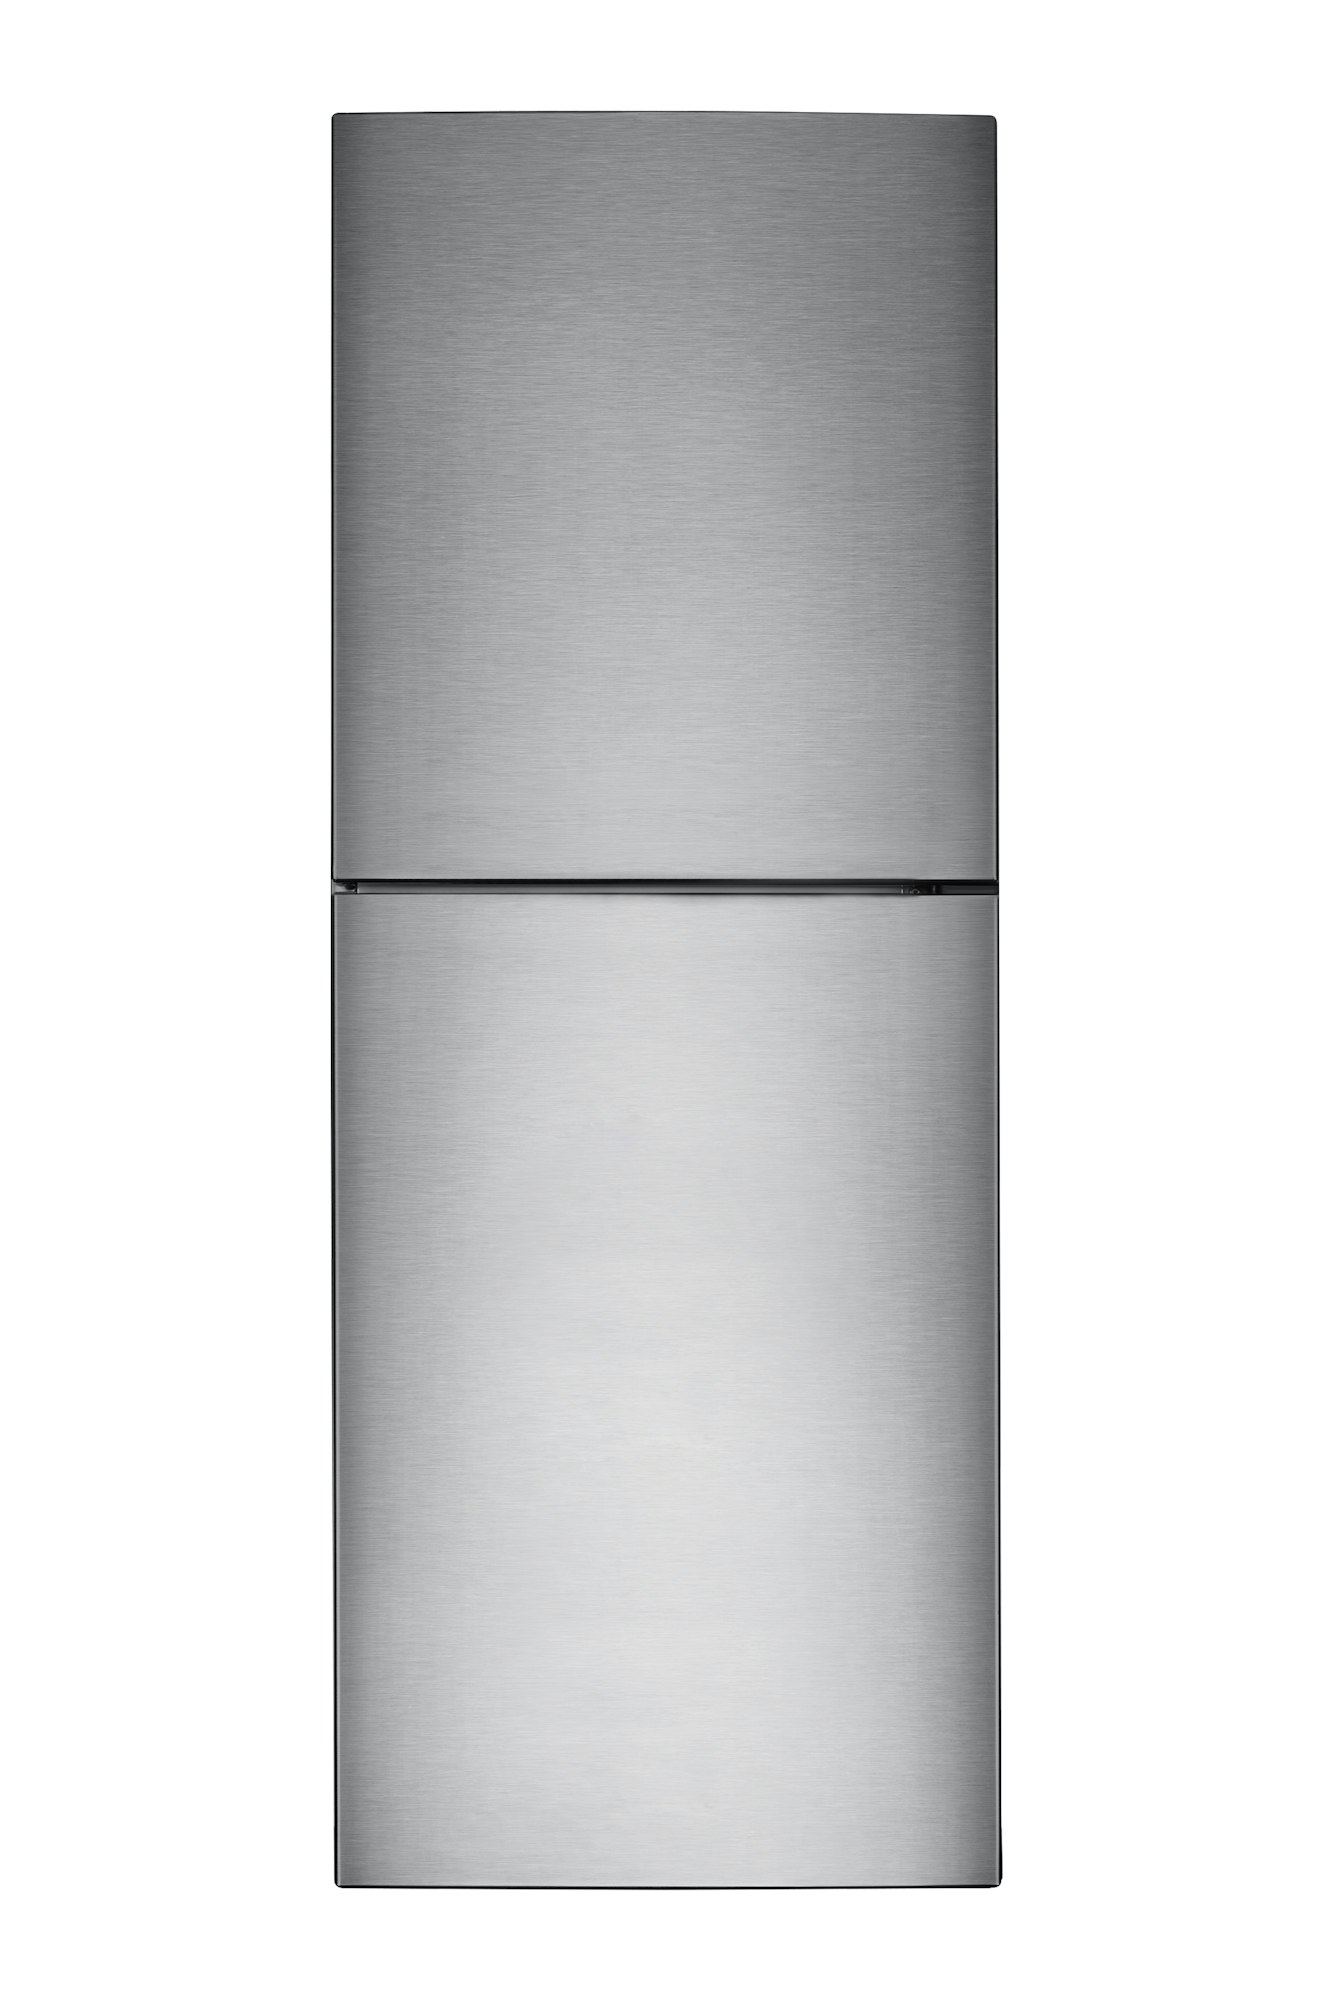 fridge isolated on white background